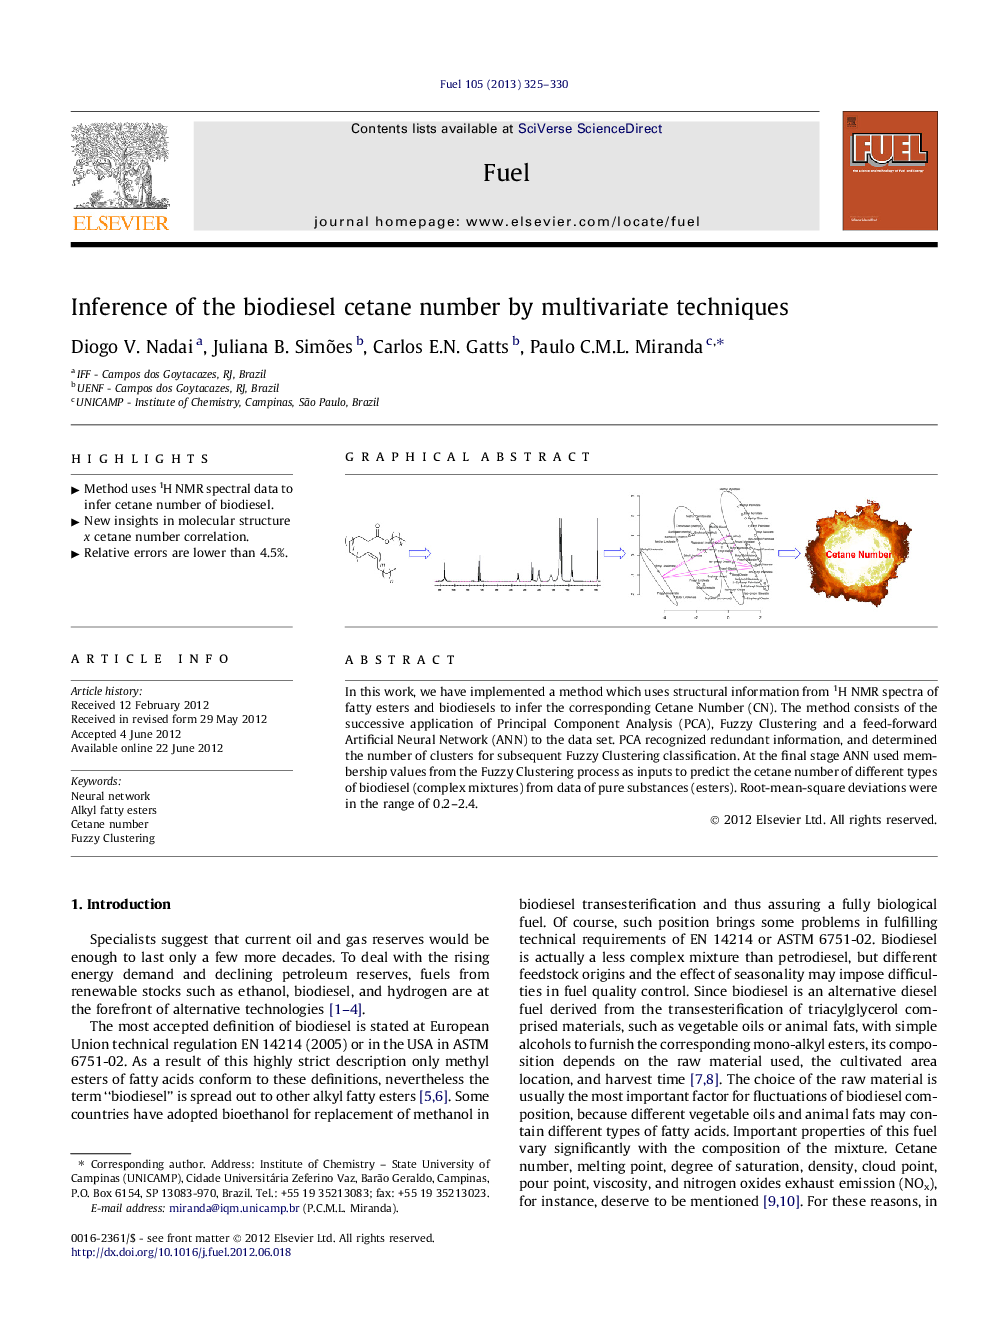 استنتاج عدد سیتان بیودیزل با استفاده از تکنیک های چند متغیره 